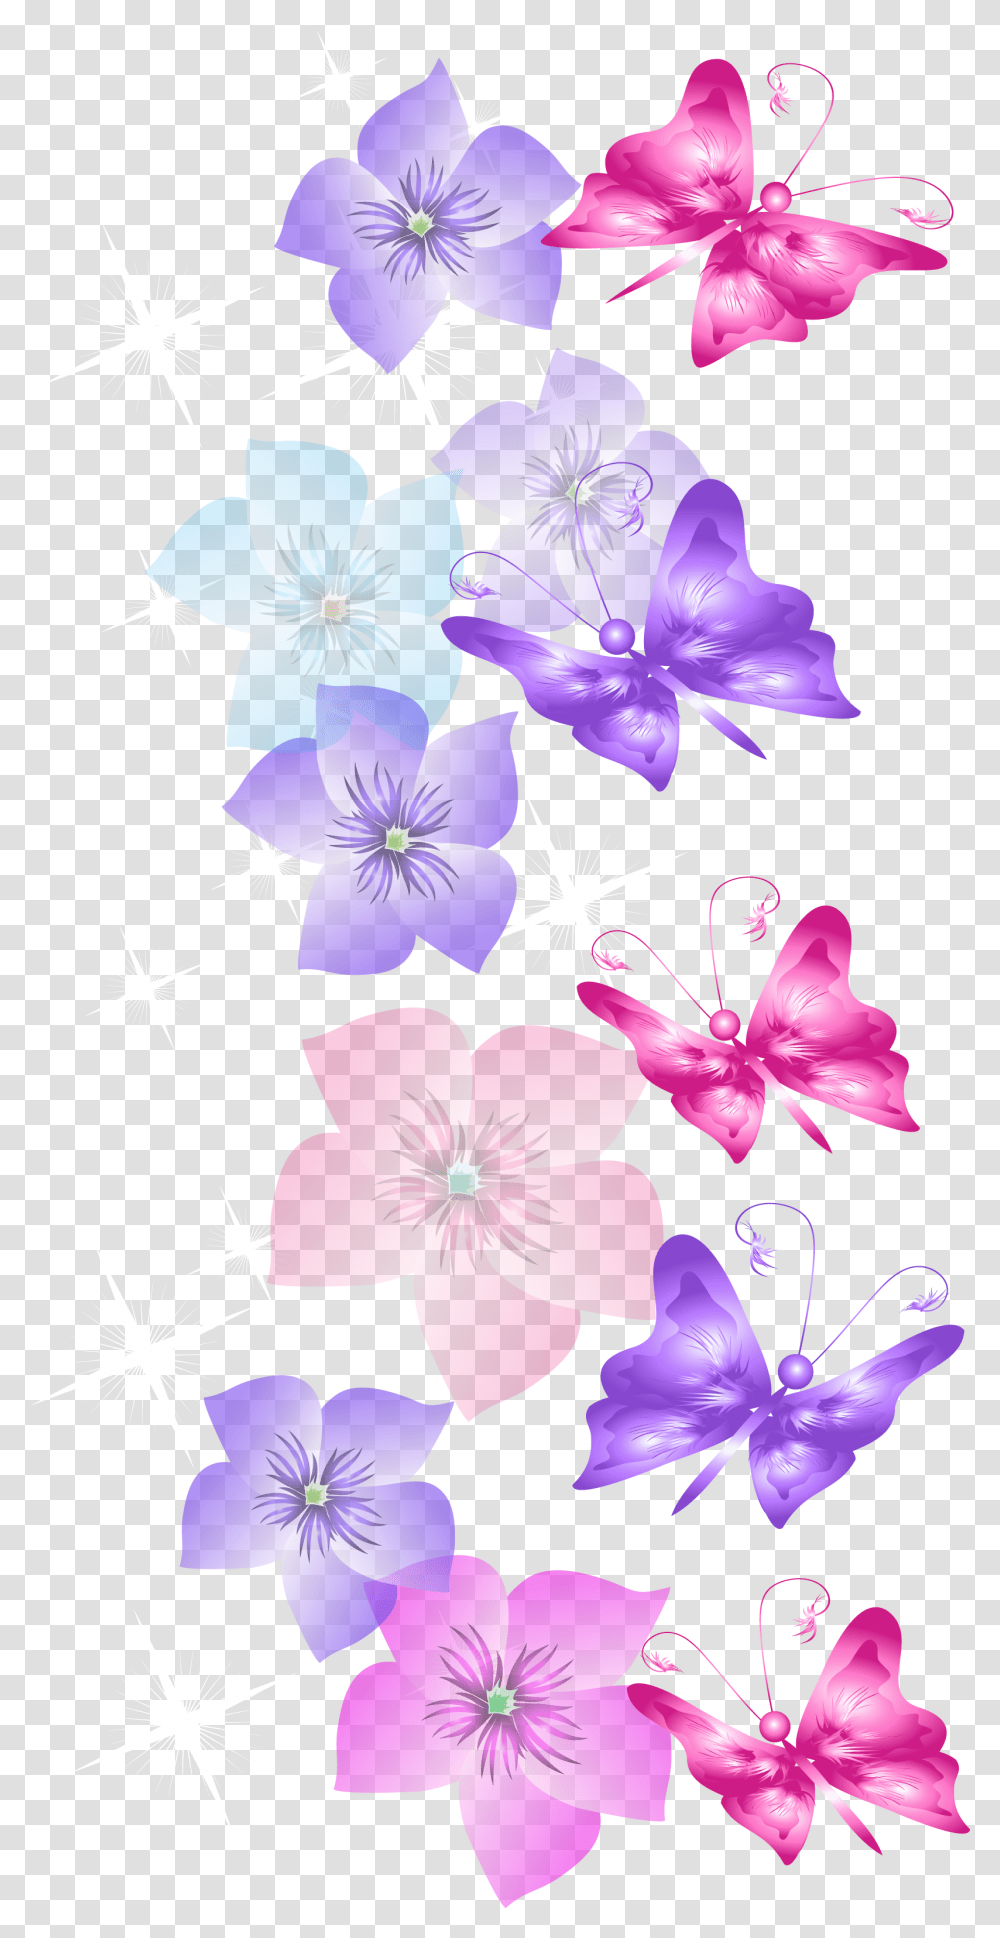 Butterflies And Flowers Decoration Clipart Flower Marco Flores Y Mariposas, Geranium, Plant, Blossom, Purple Transparent Png